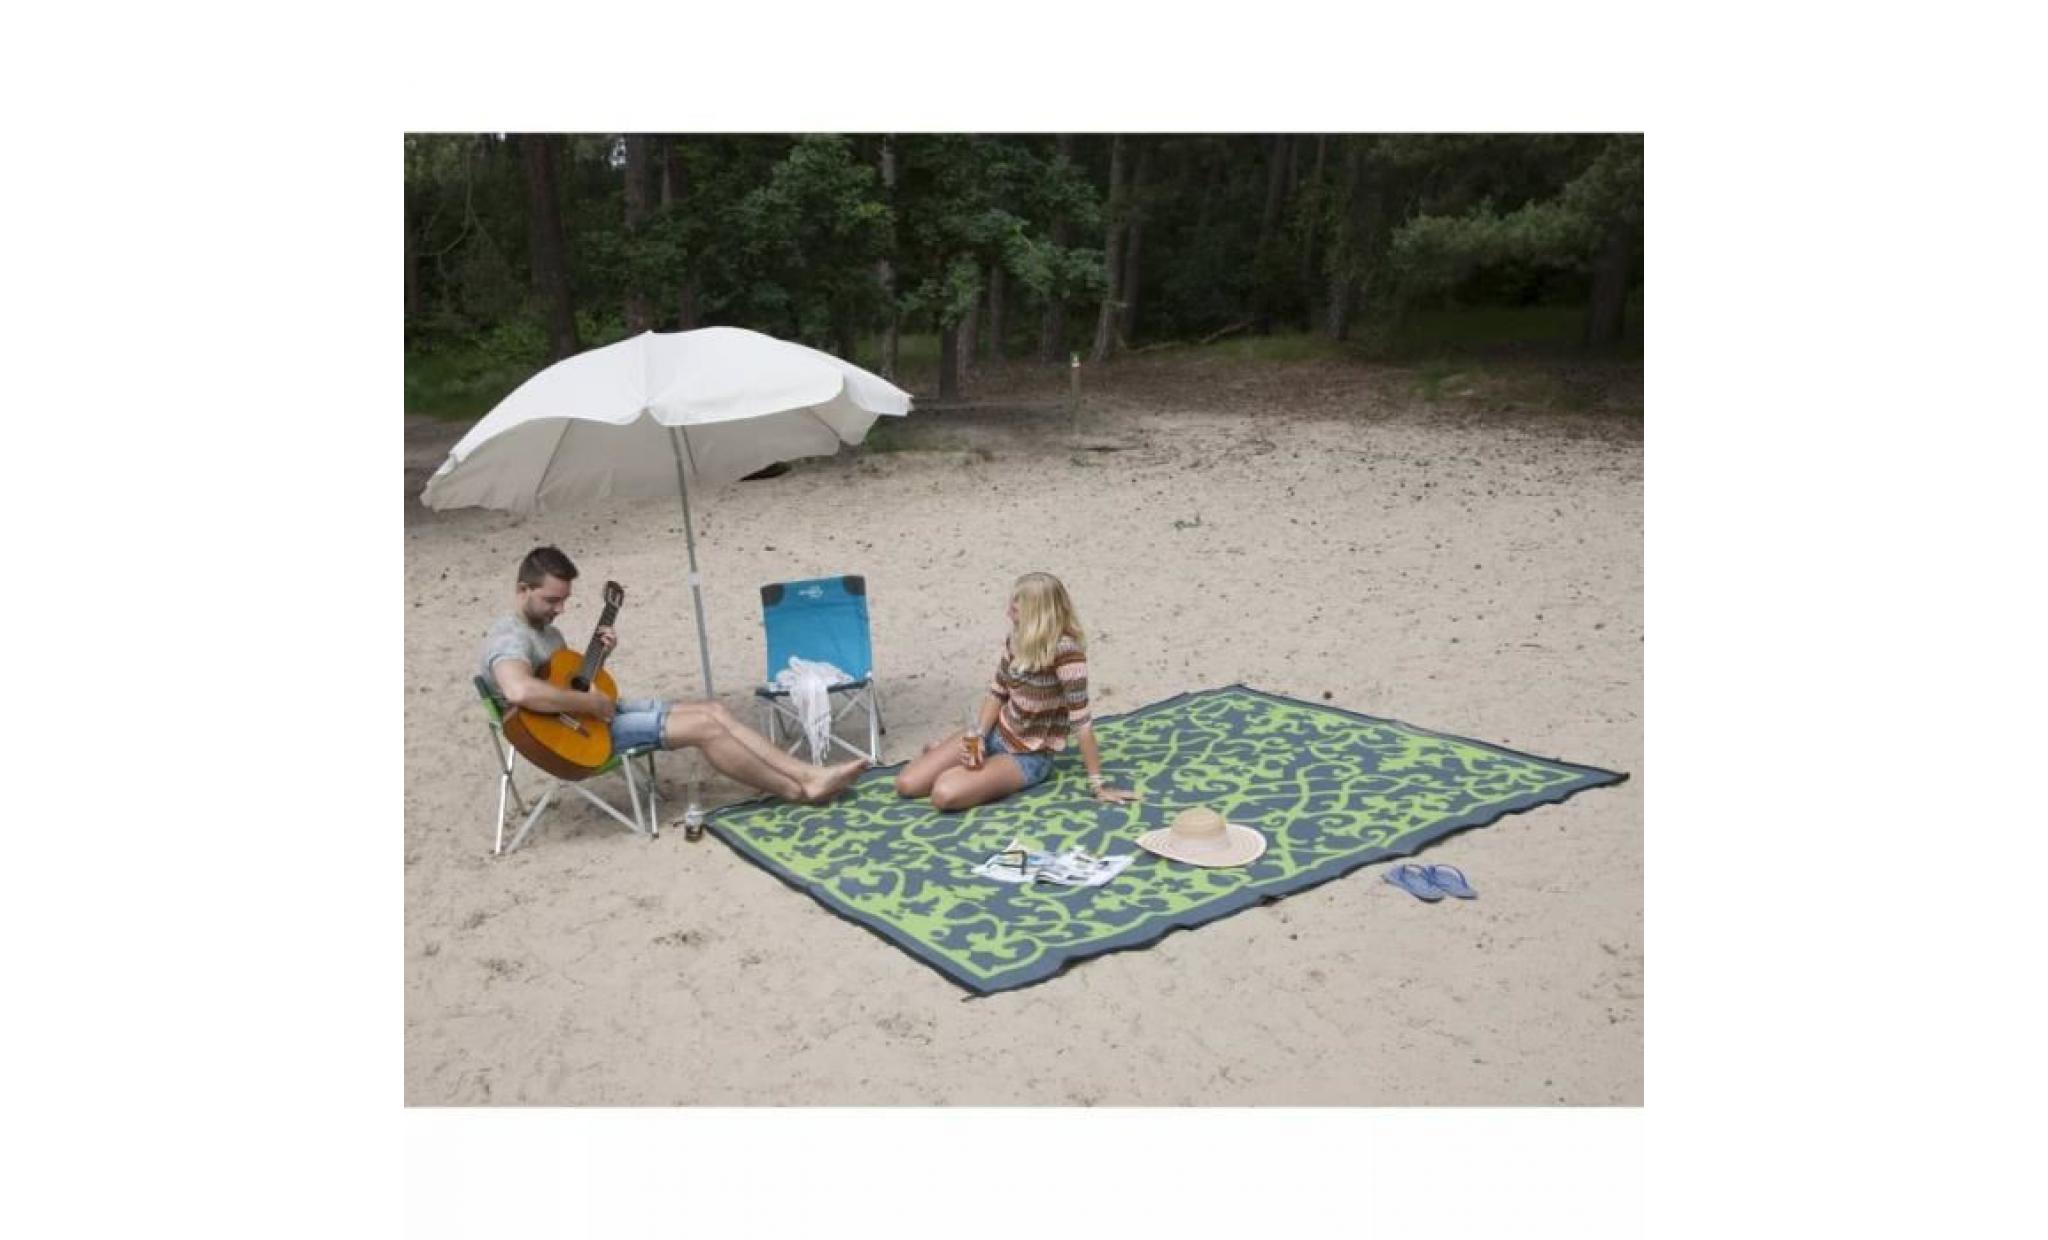 bo leisure tapis d'extérieur chill mat picnic 2x1,8m champagne 4271014 pas cher